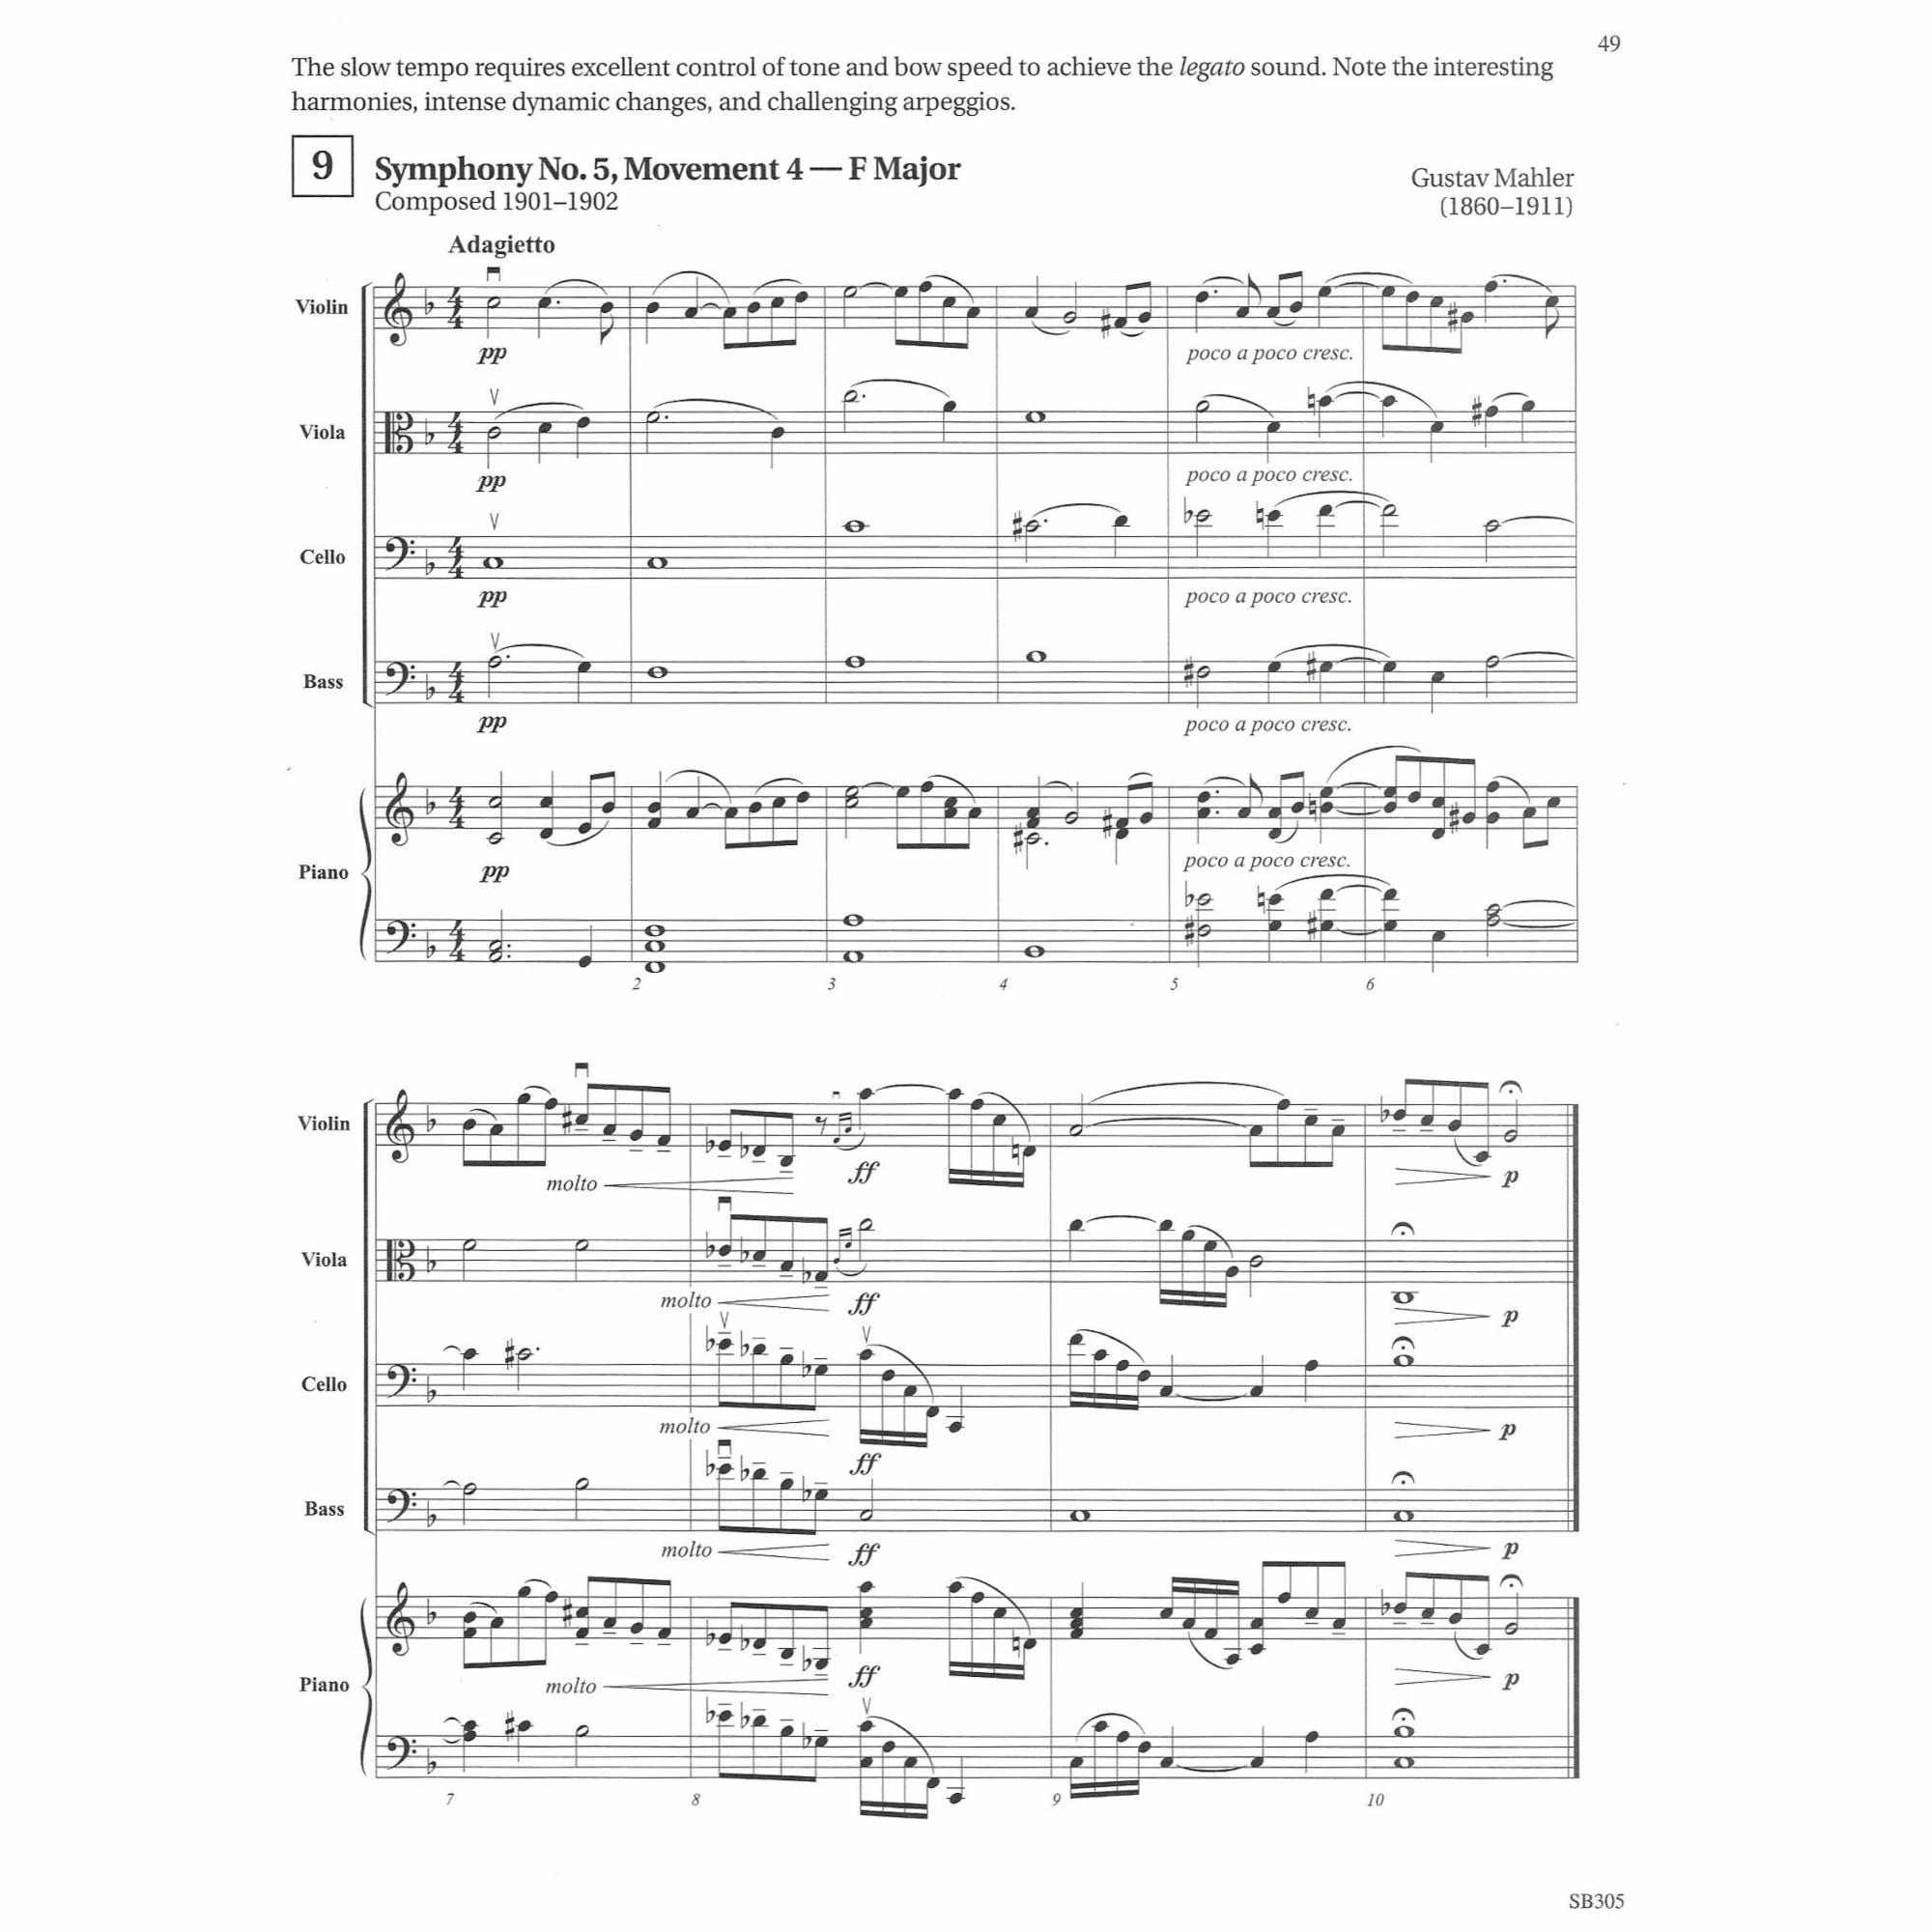 Sample: Violin (Pg. 49)